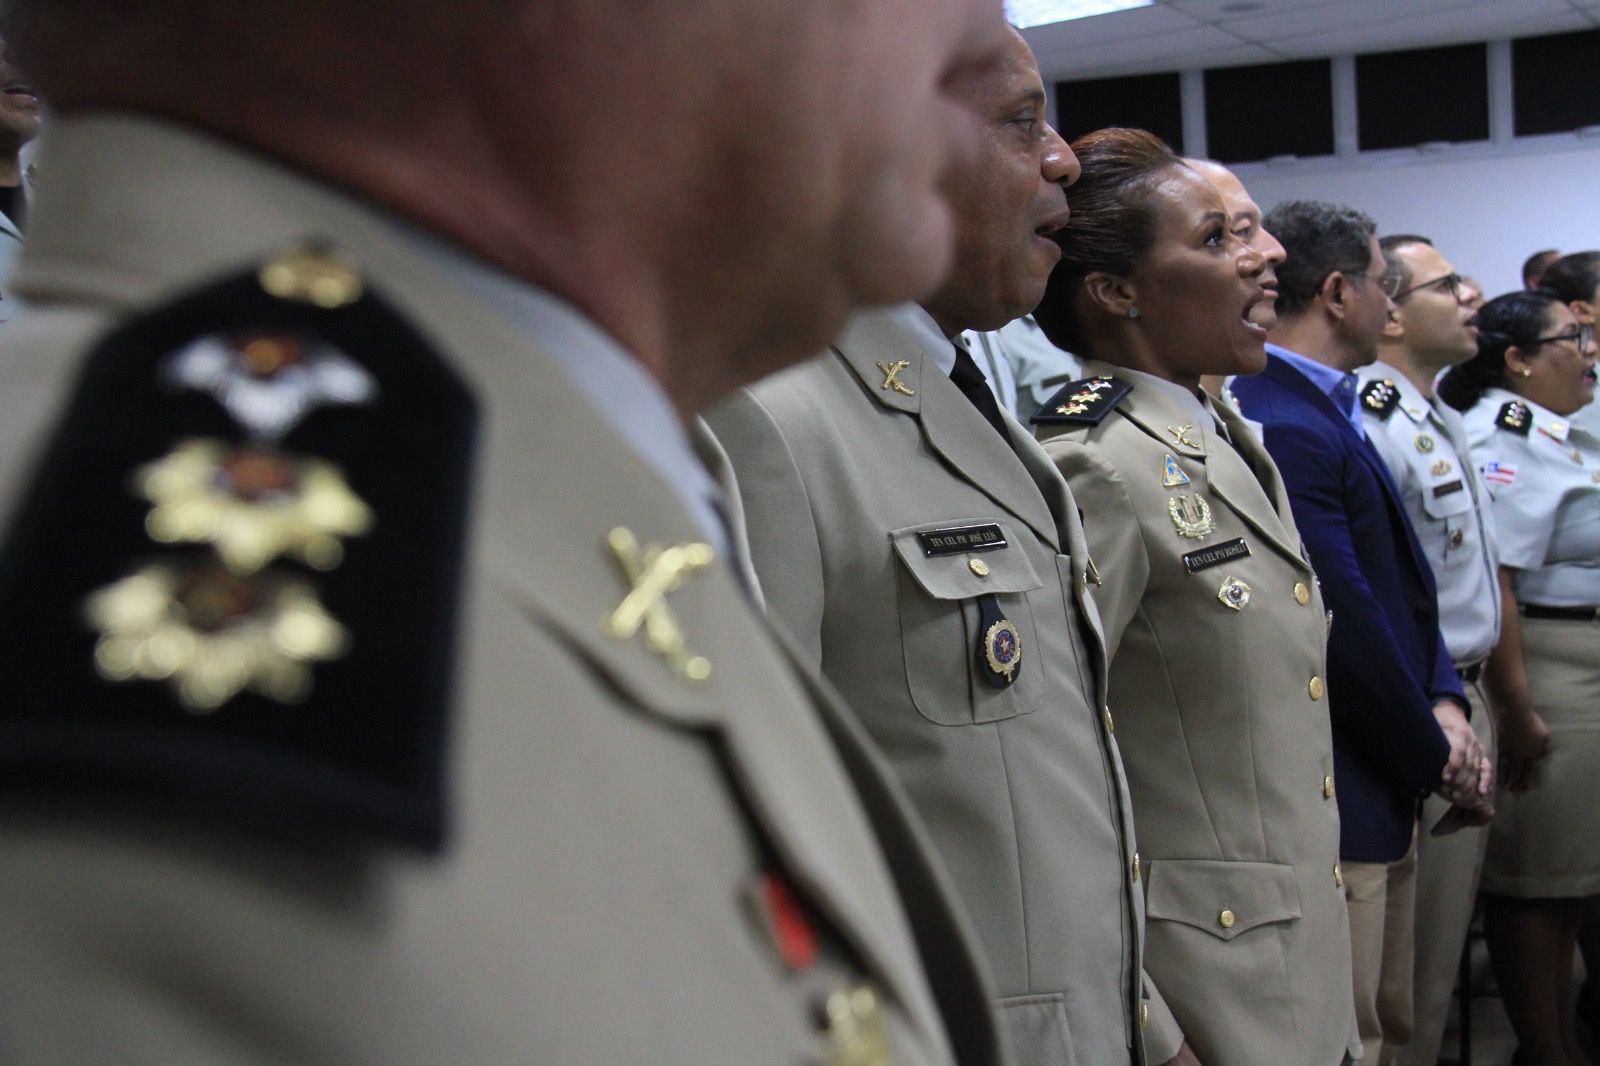 Pela primeira vez na história da PM, uma mulher passa a comandar um batalhão